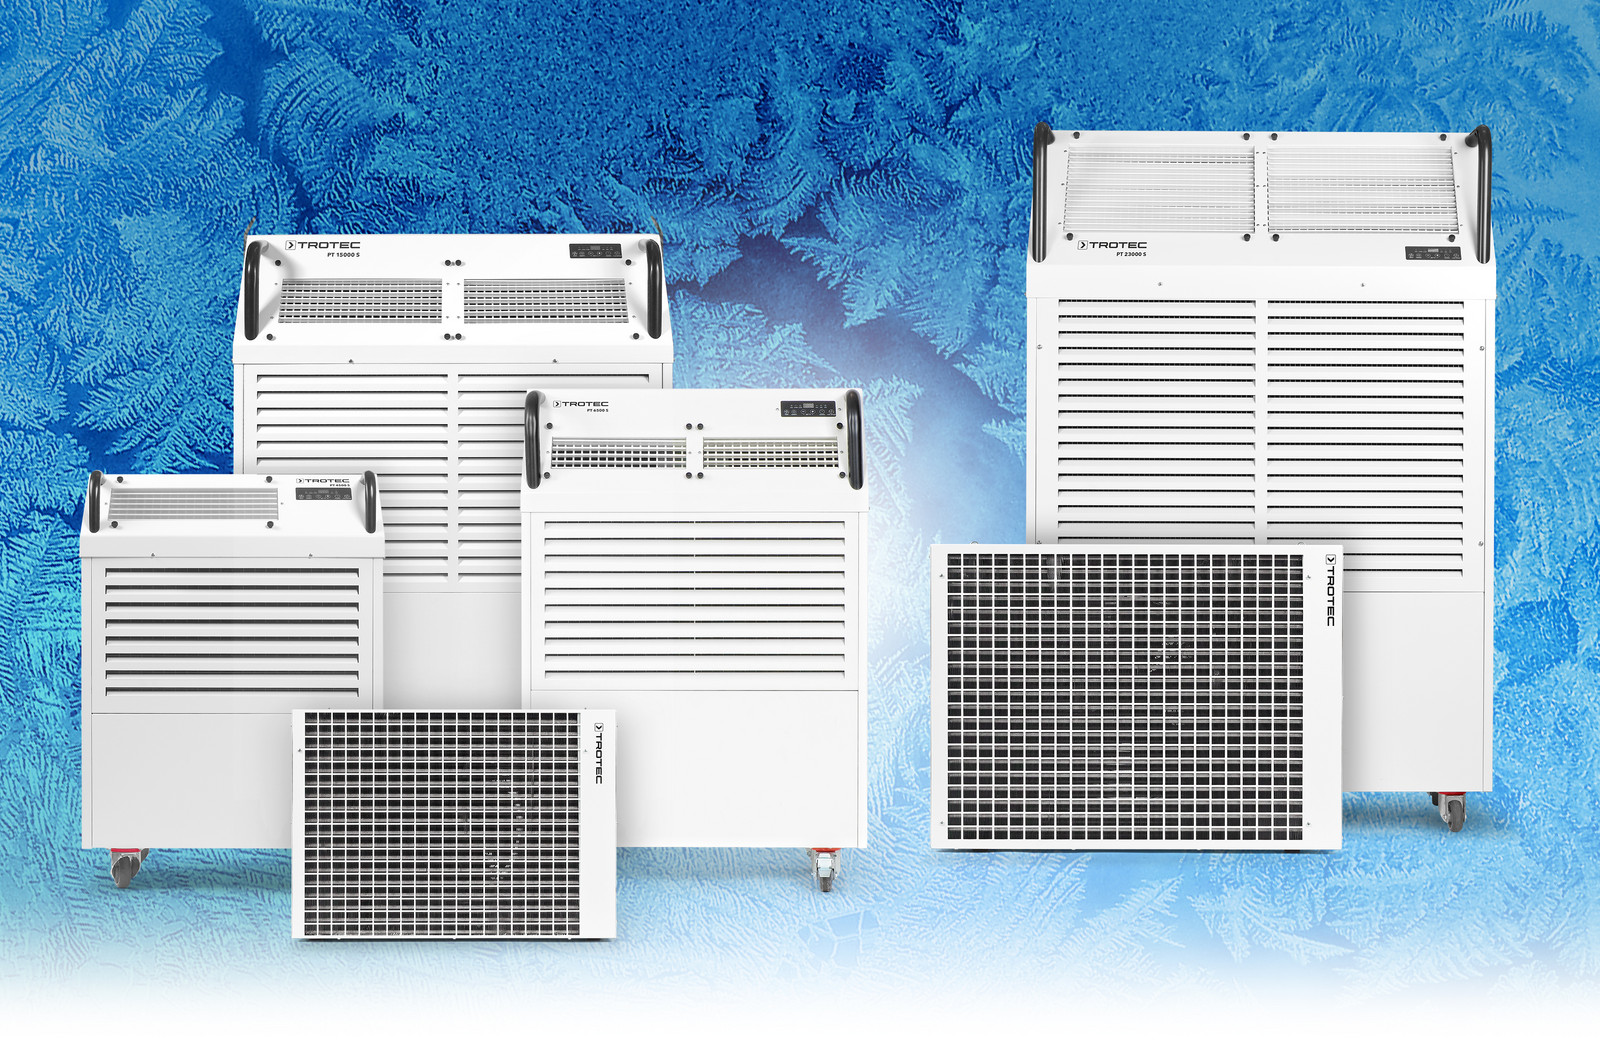 Snažni komercijalni klima uređaji iz serije PT za brzo hlađenje čak i velikih prostorija